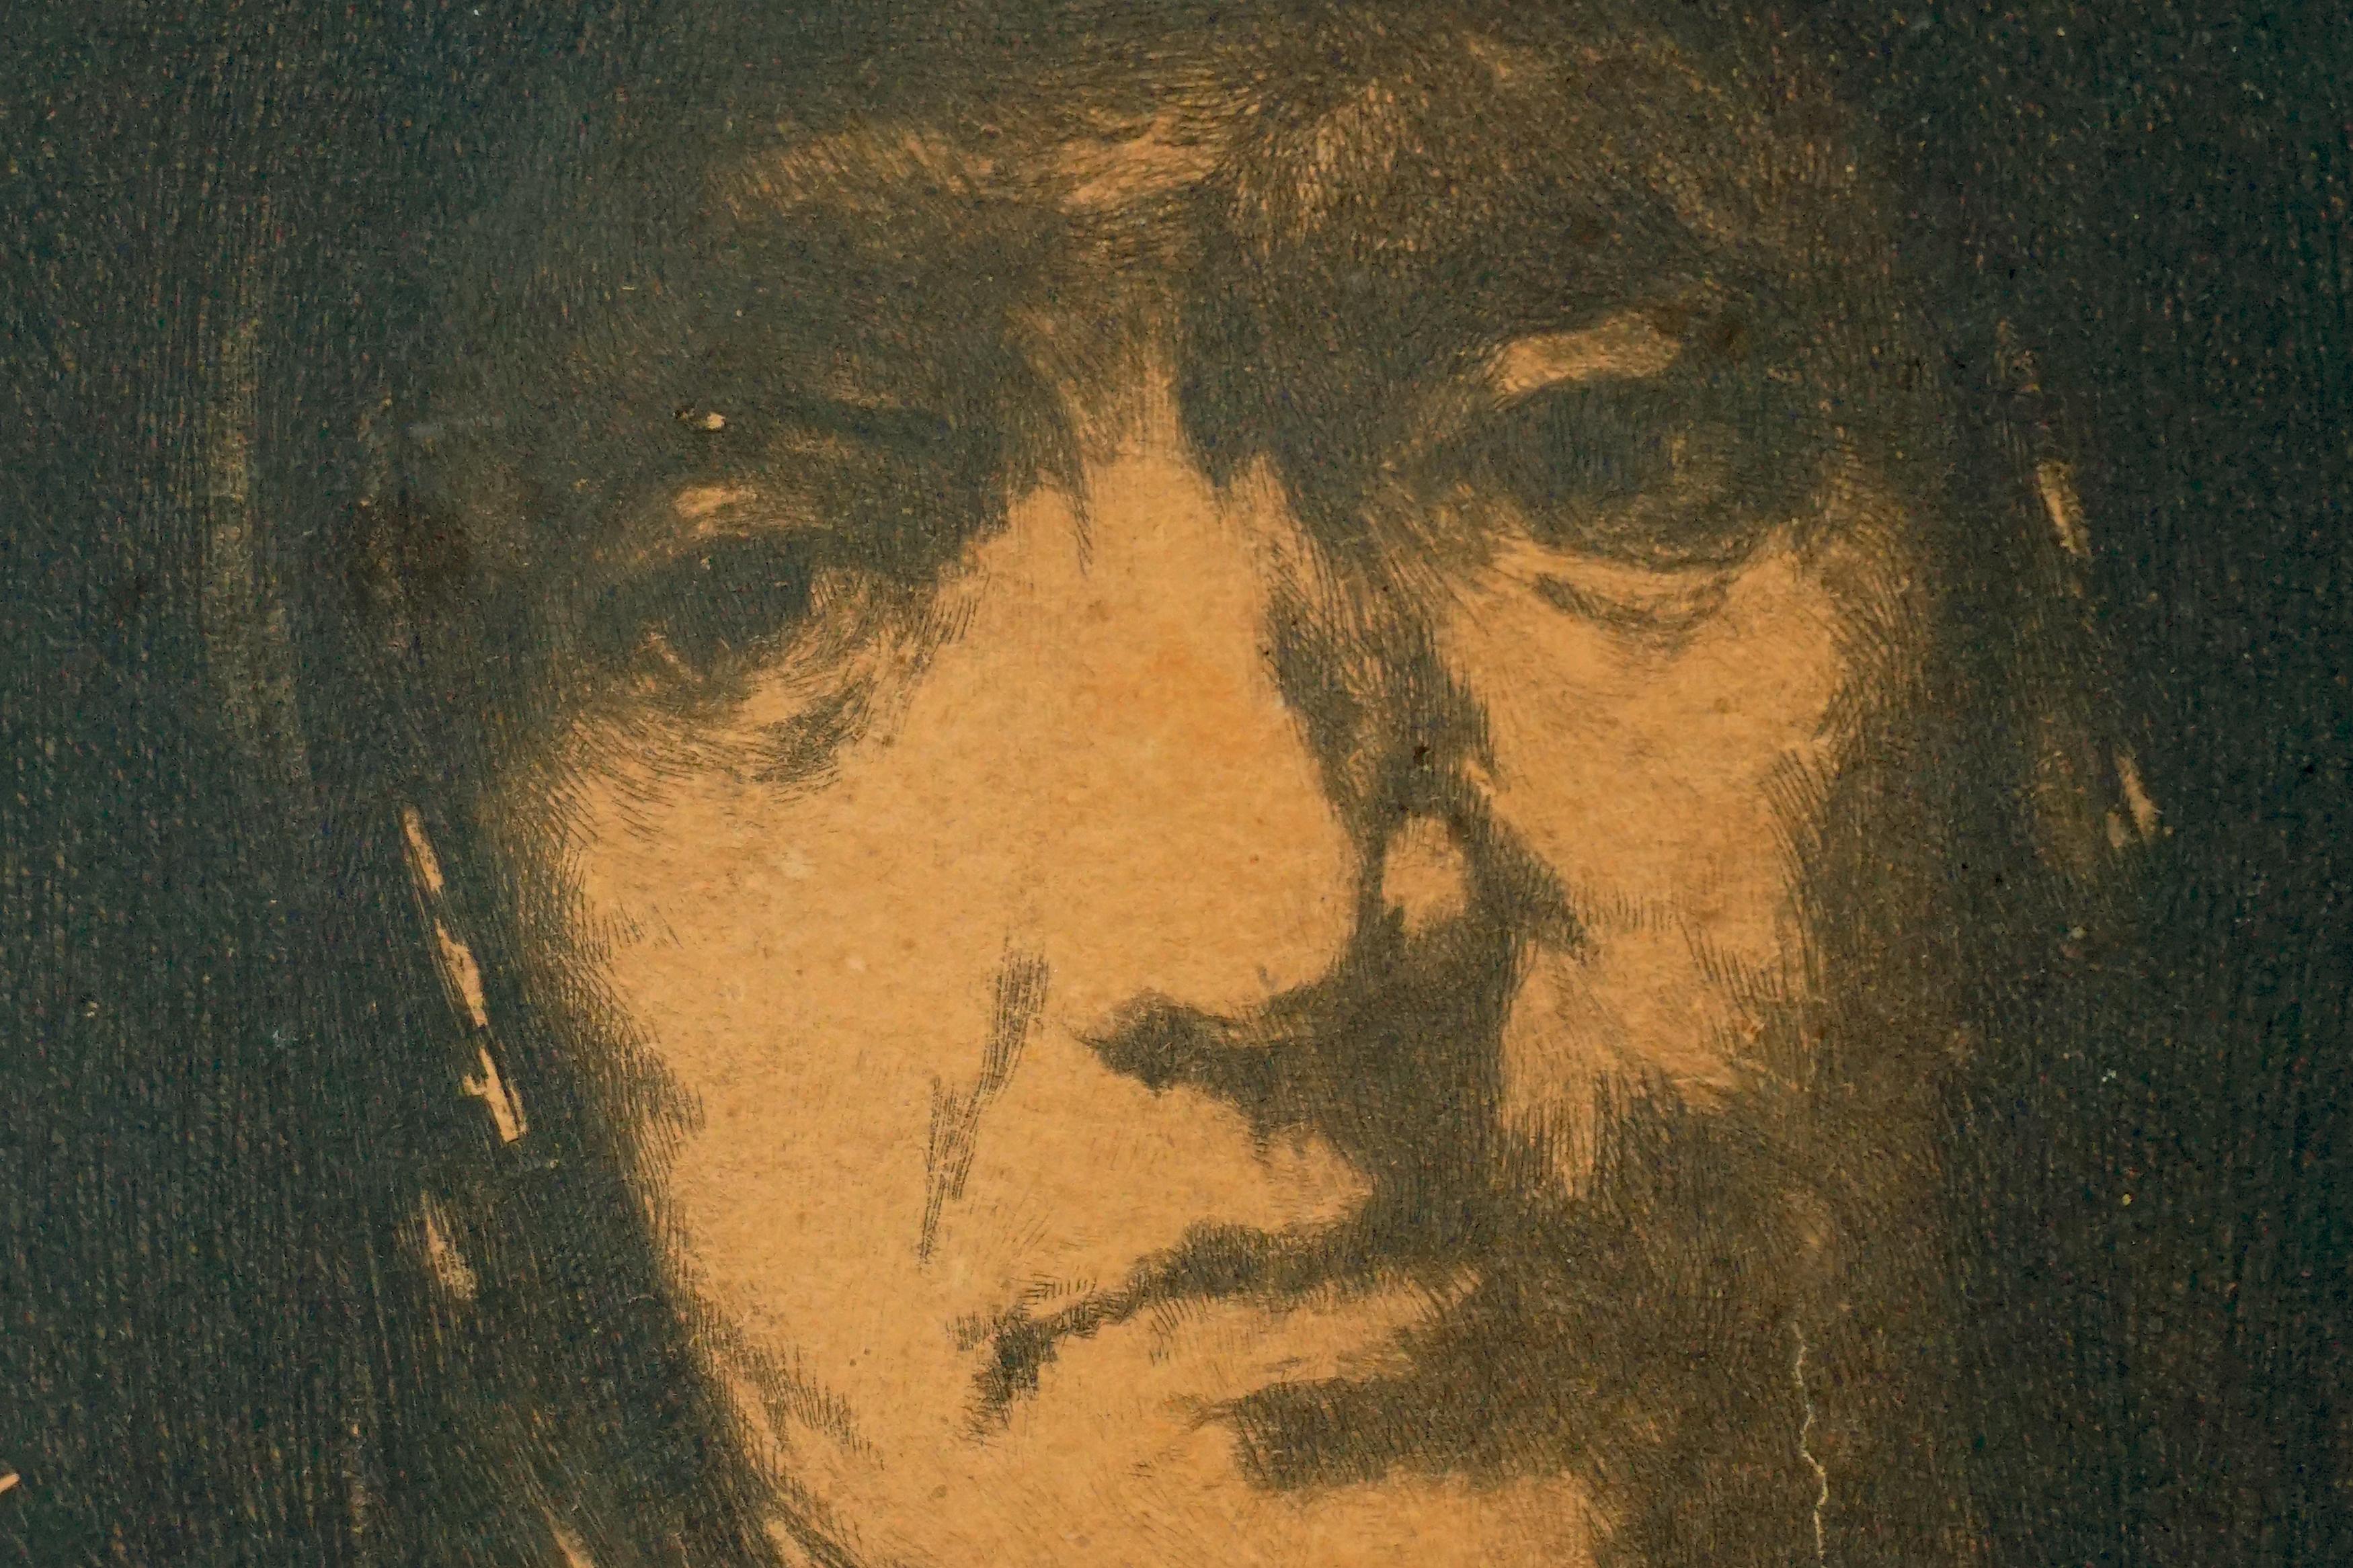 Studie des frühen 20. Jahrhunderts zu Rembrandts Porträt einer alten Frau Russisch für Niello-Gravur 

Eine wunderbare Studie von Rembrandts Porträt einer alten Frau, verwendet für einen Niello-Stich des russischen Künstlers Eustaphy Pavlovich